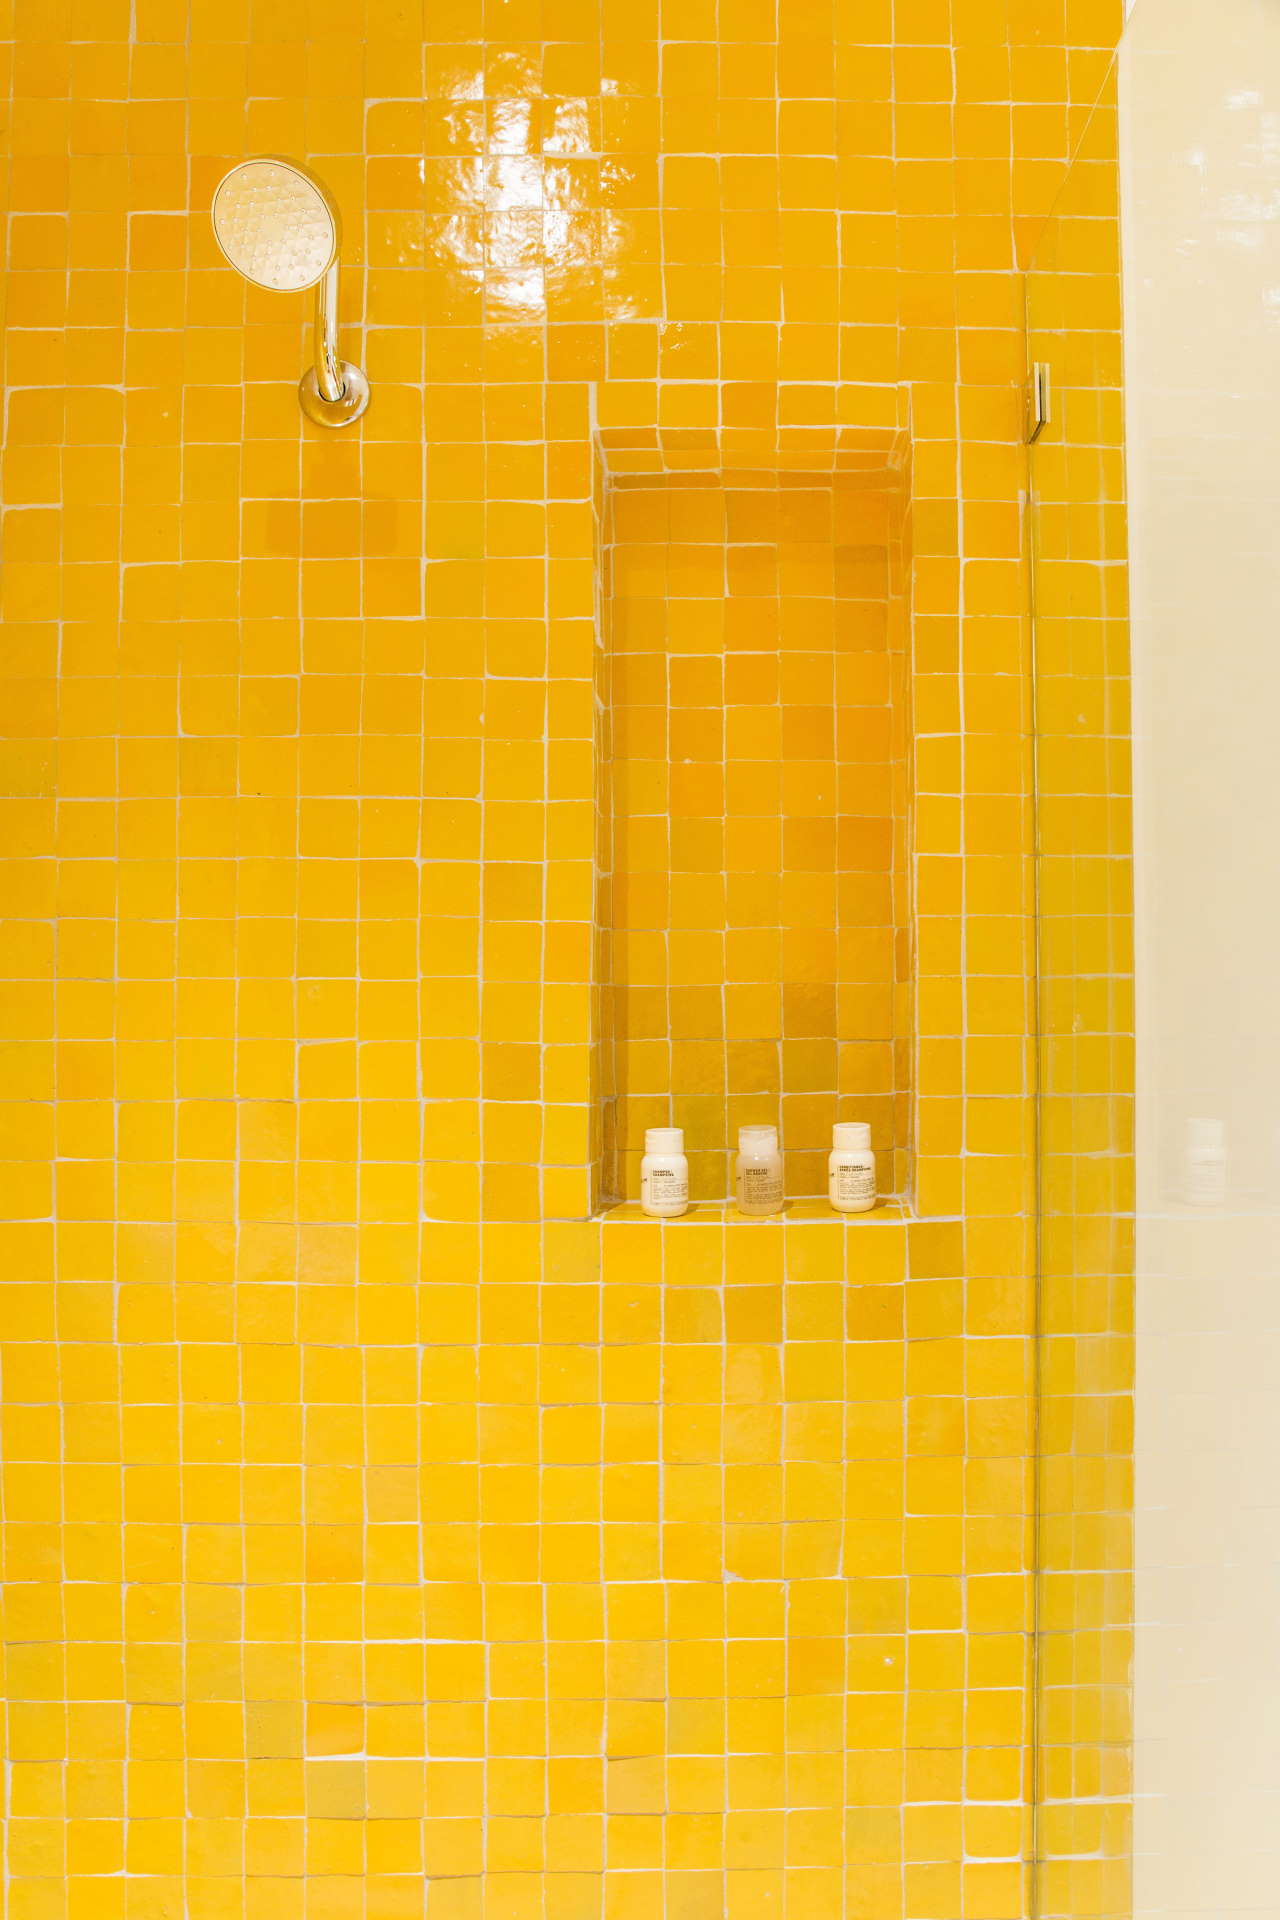 黄色房间。 照片由亚伦哈克斯顿拍摄。